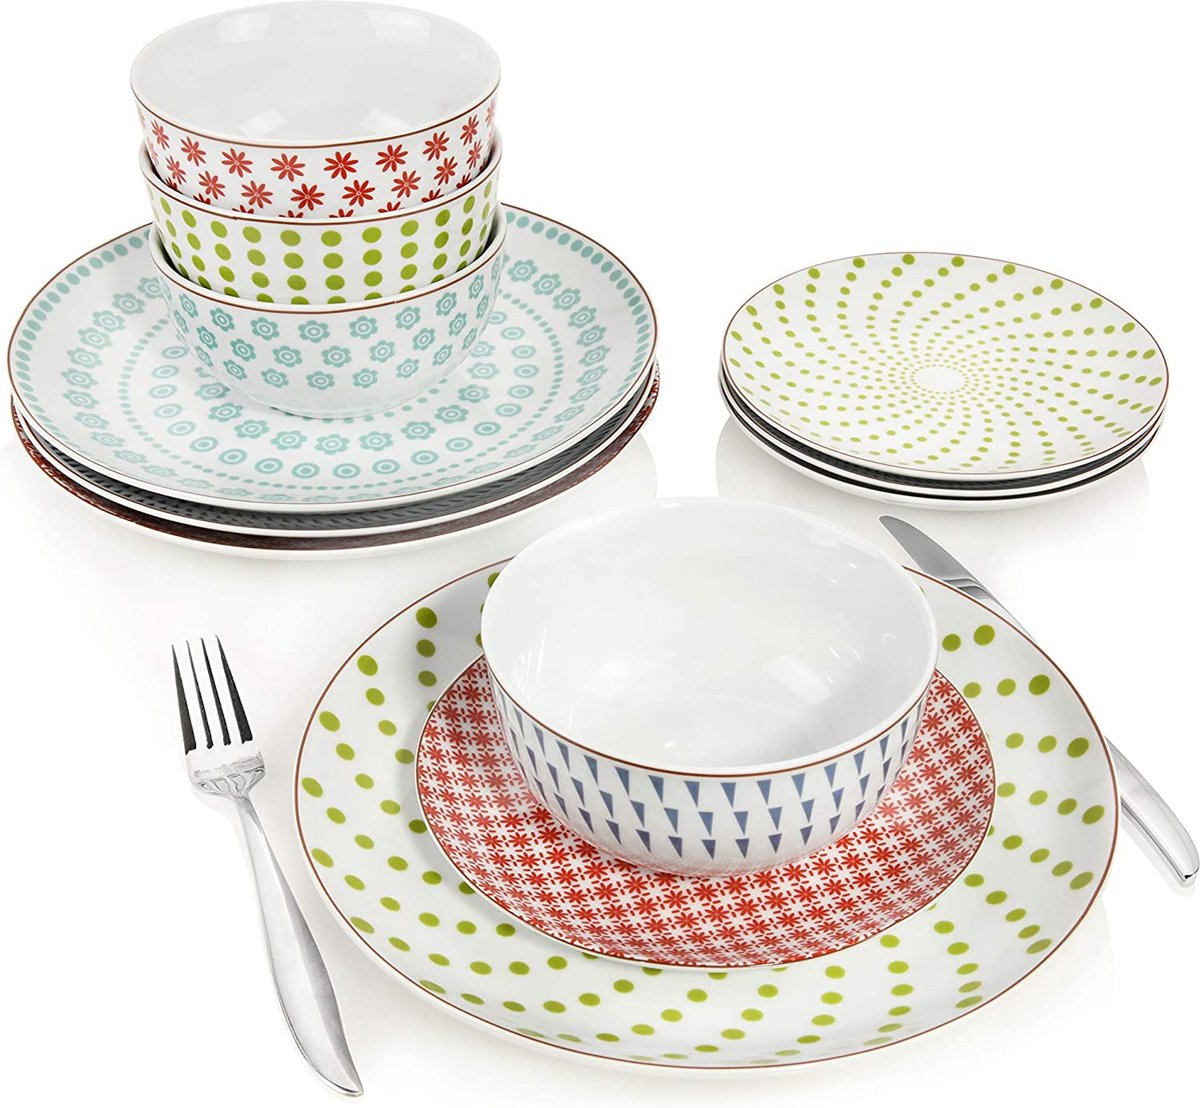 SÄNGER Scandinavia Line porseleinen servies, 12-delig servies voor 4 personen, kleurrijke design ronde borden